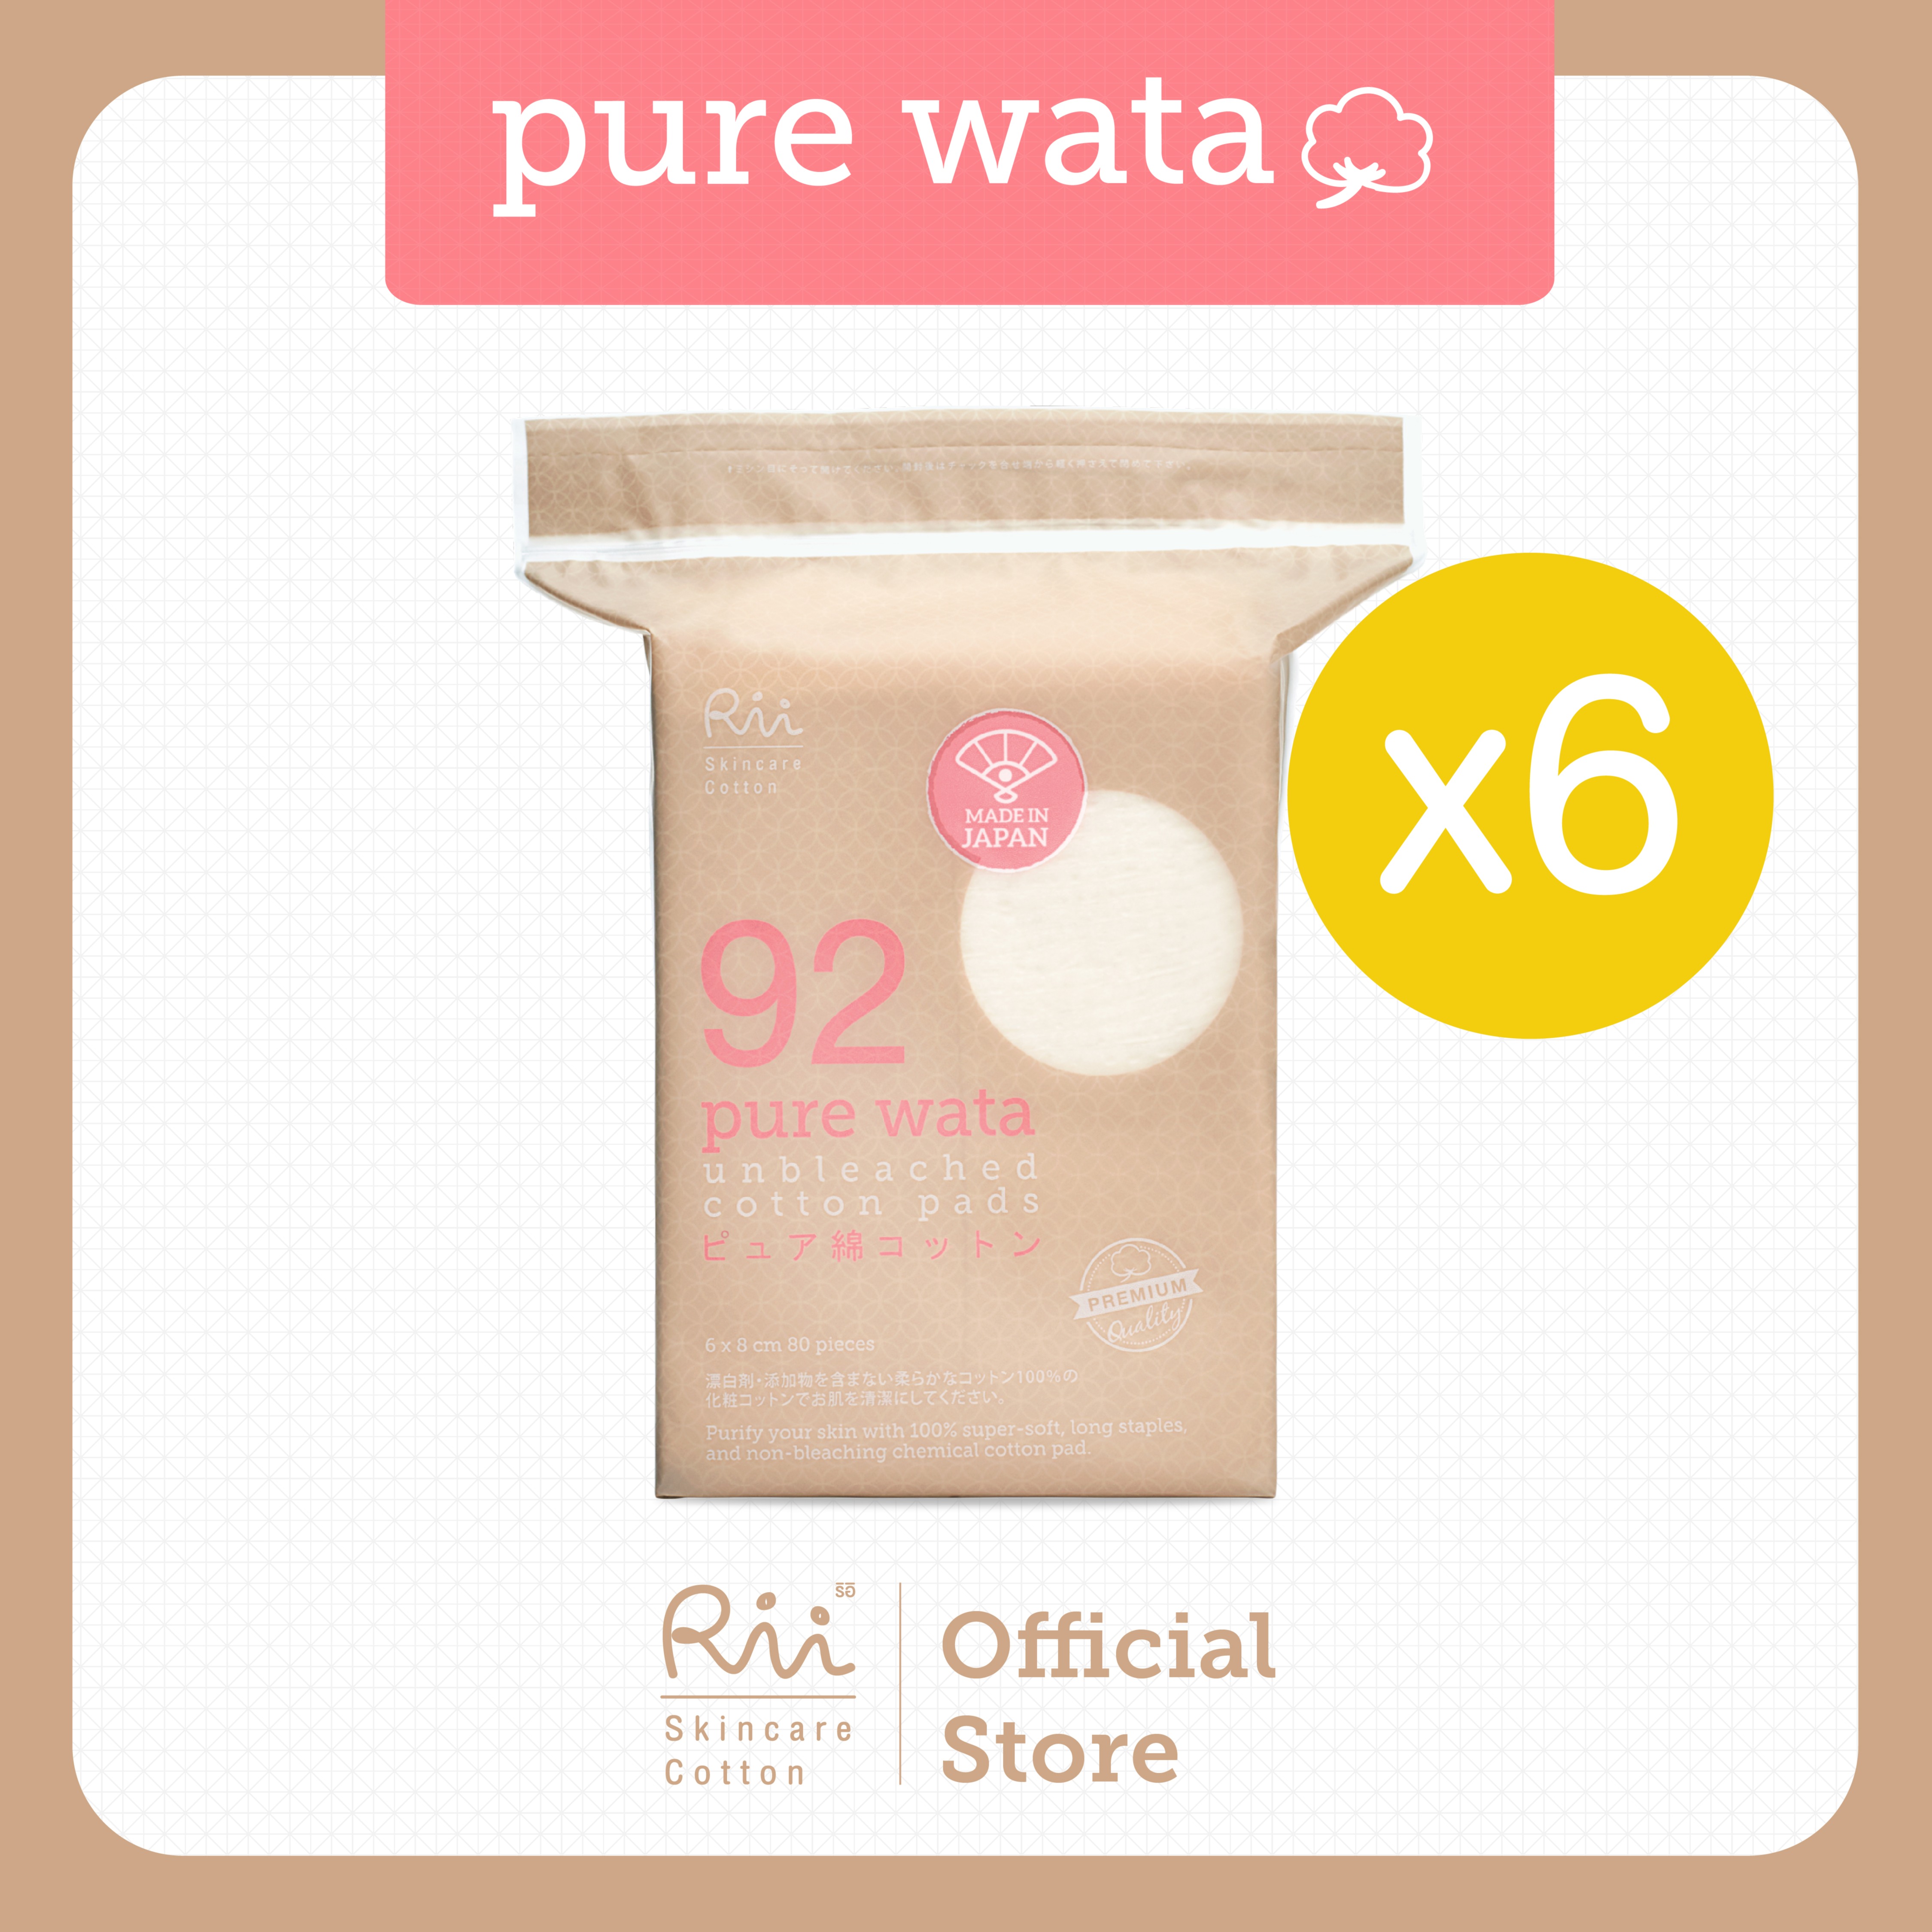 รีวิว [แพ็คหก] Rii 92 Pure Wata Unbleached Cotton Pads